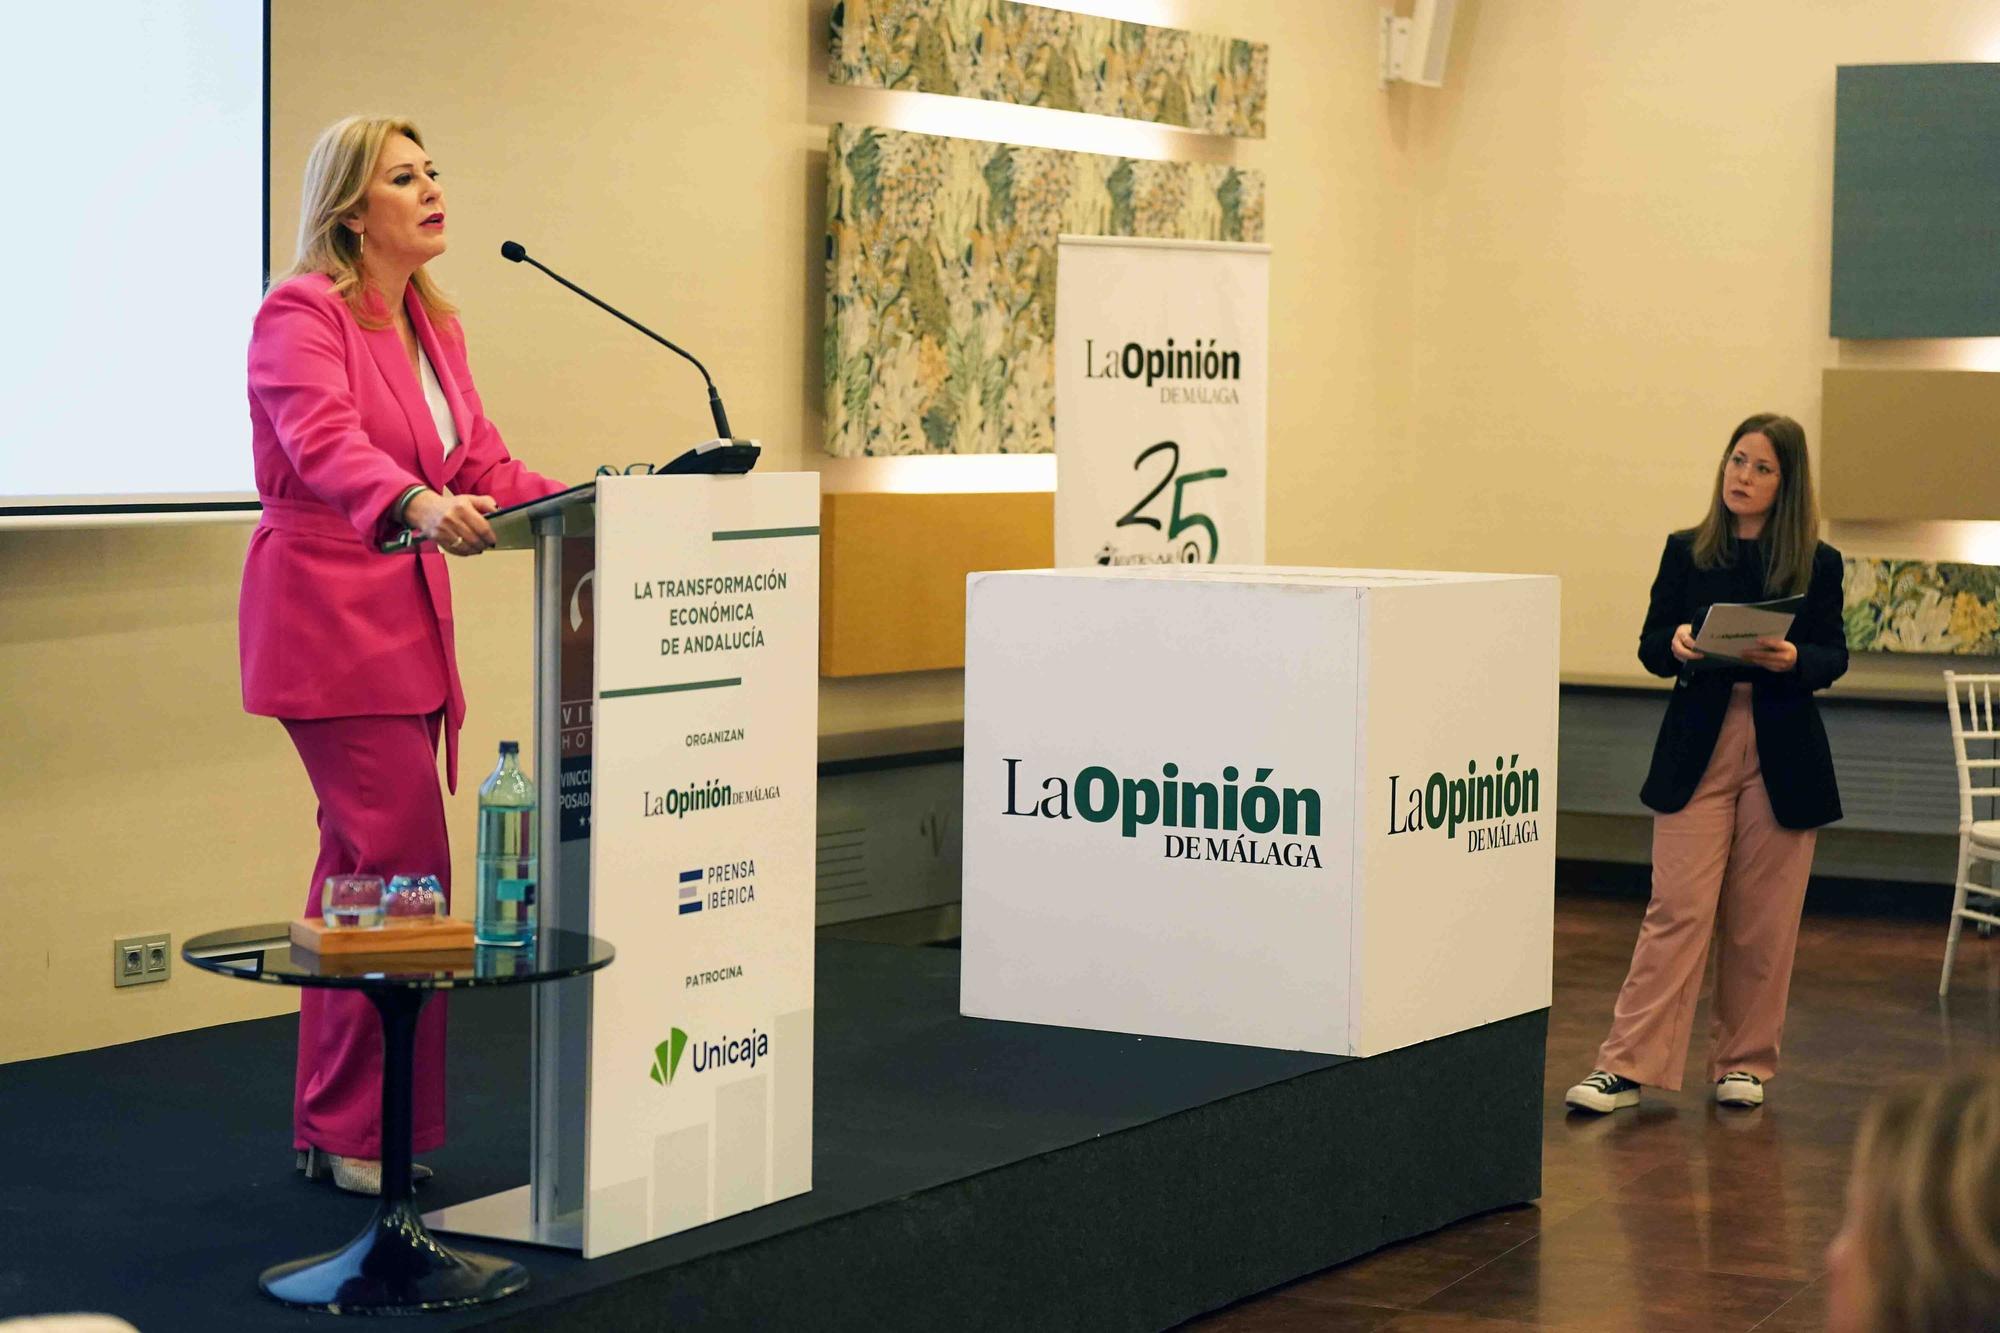 La consejera de Economía, Hacienda y Fondos Europeos, Carolina España, participa en el Foro de La Opinión de Málaga